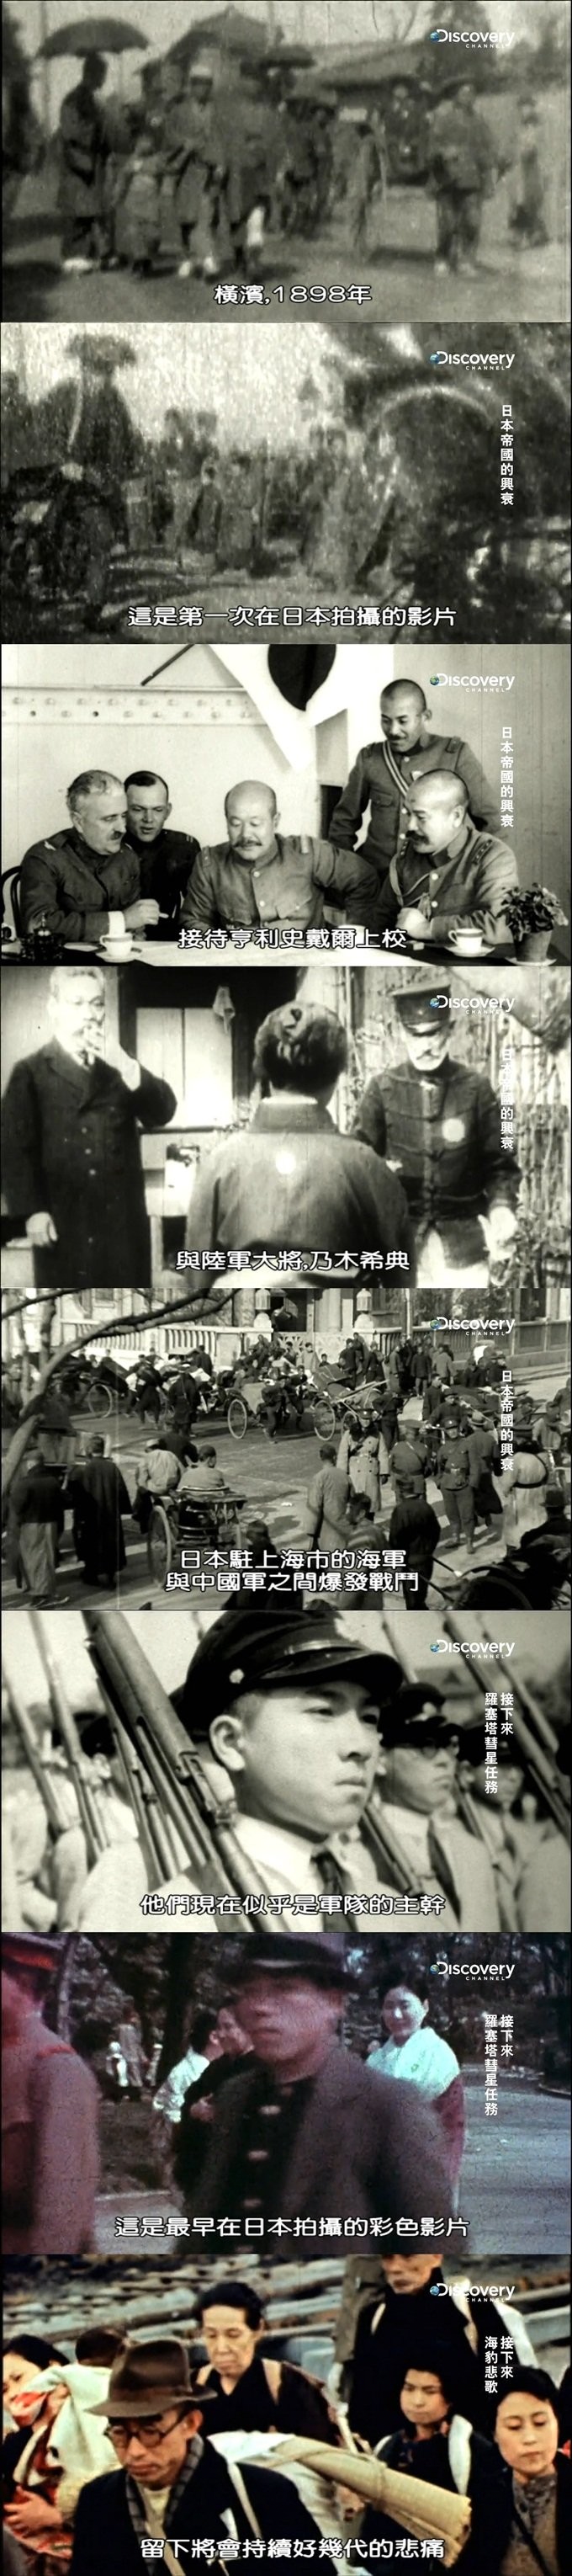 [探索频道:日本帝国的兴衰][全集]4k|1080p高清百度网盘